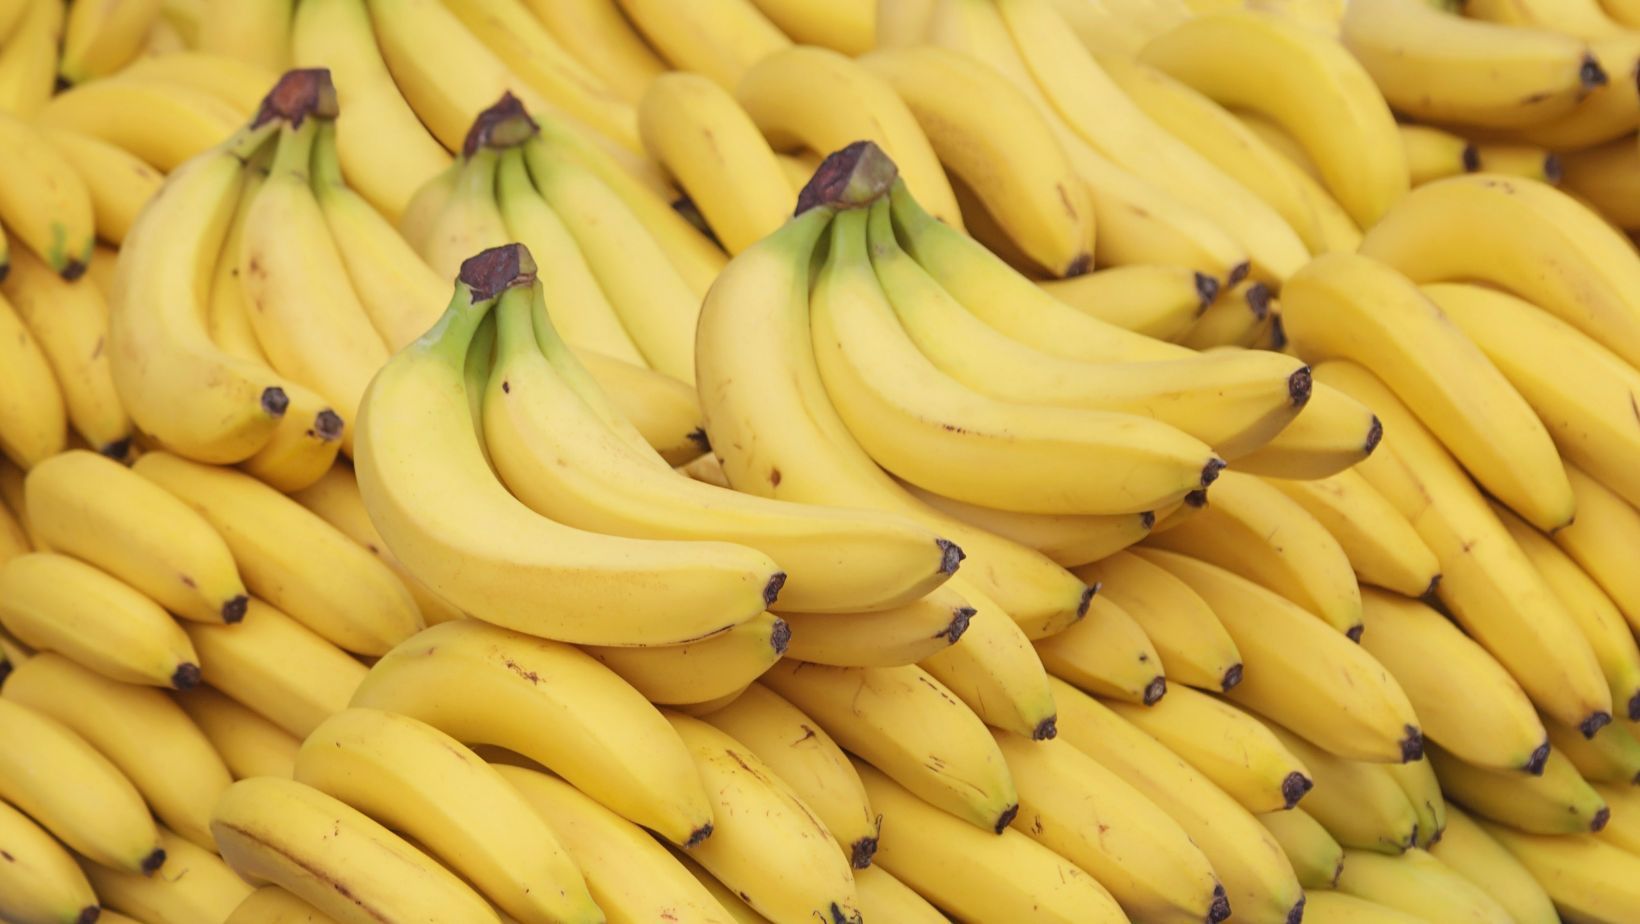 Lotul de banane cu exces de pesticide: Linella acuză ANSA că a ascuns numele altor rețele comerciale